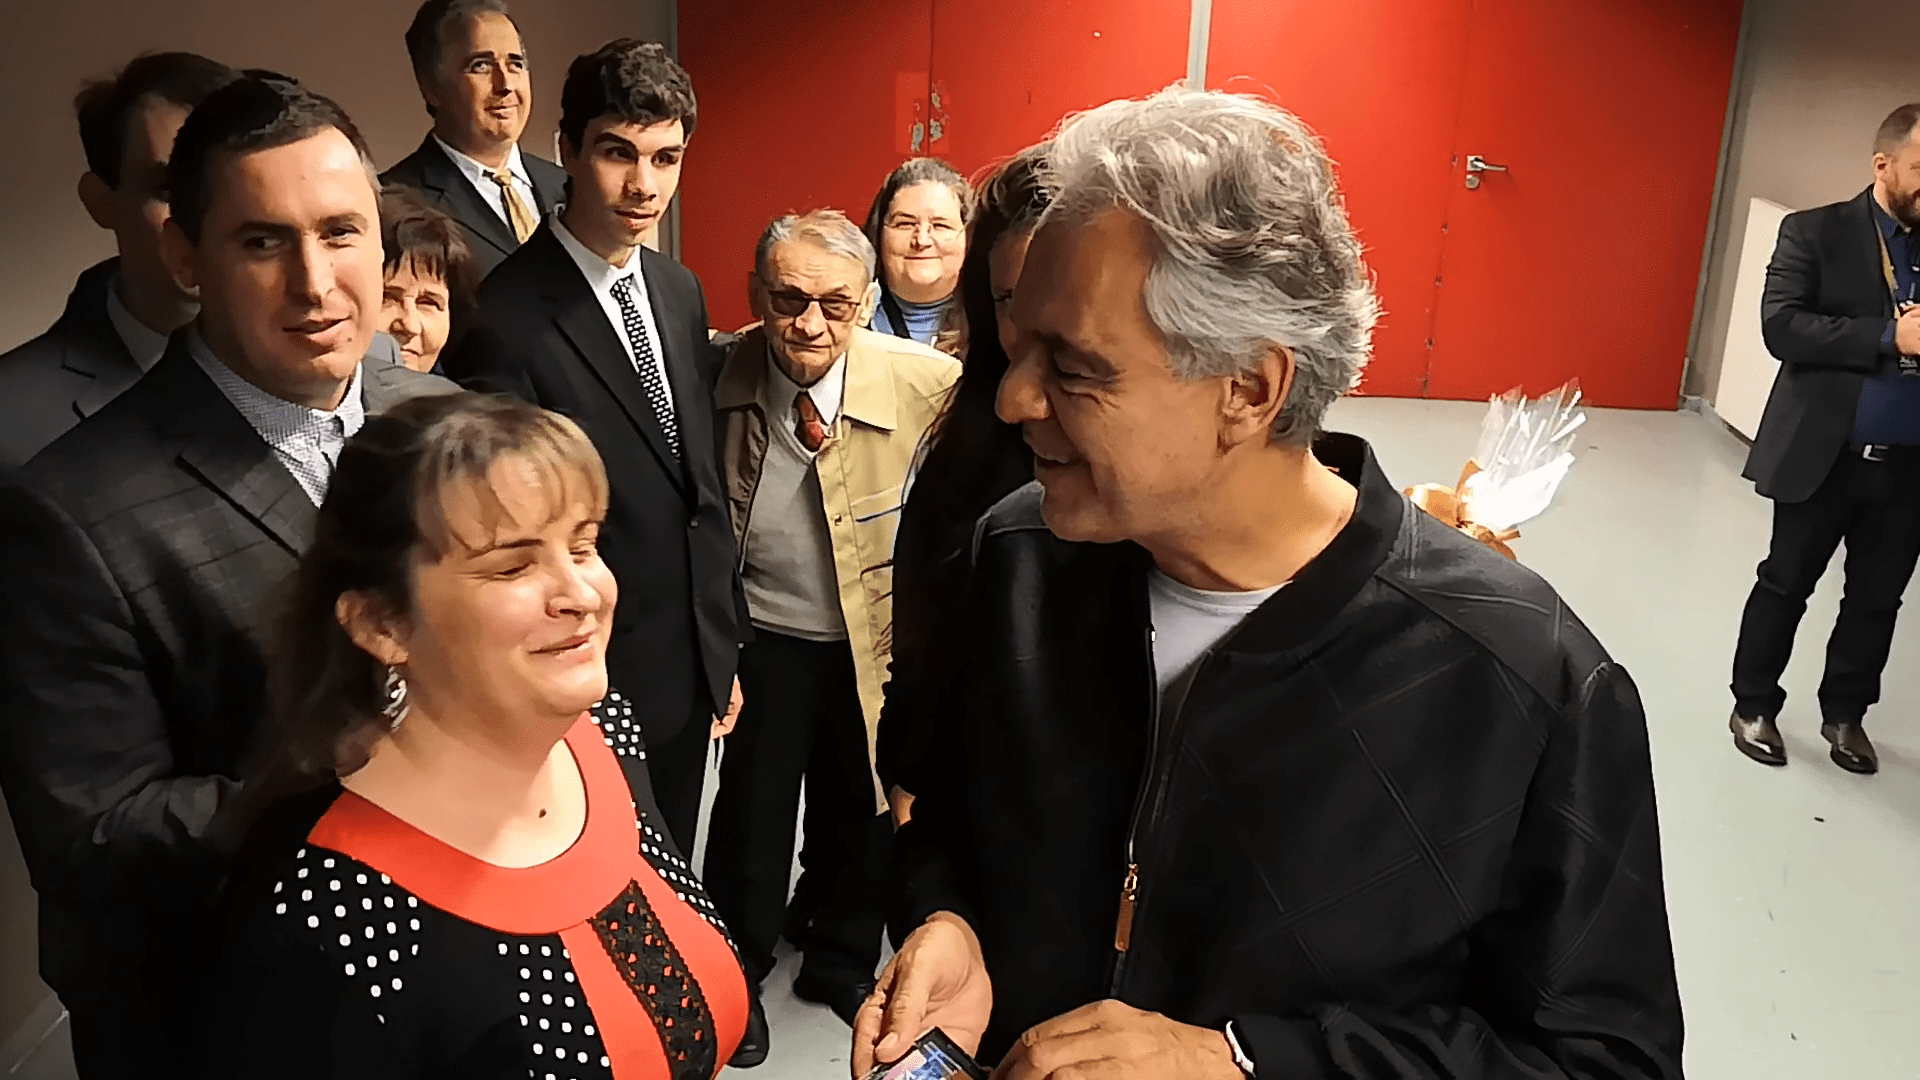 Andrea Bocelli, Máj Kriszta a képen, Bocelli olvassa a Braille-feliratot